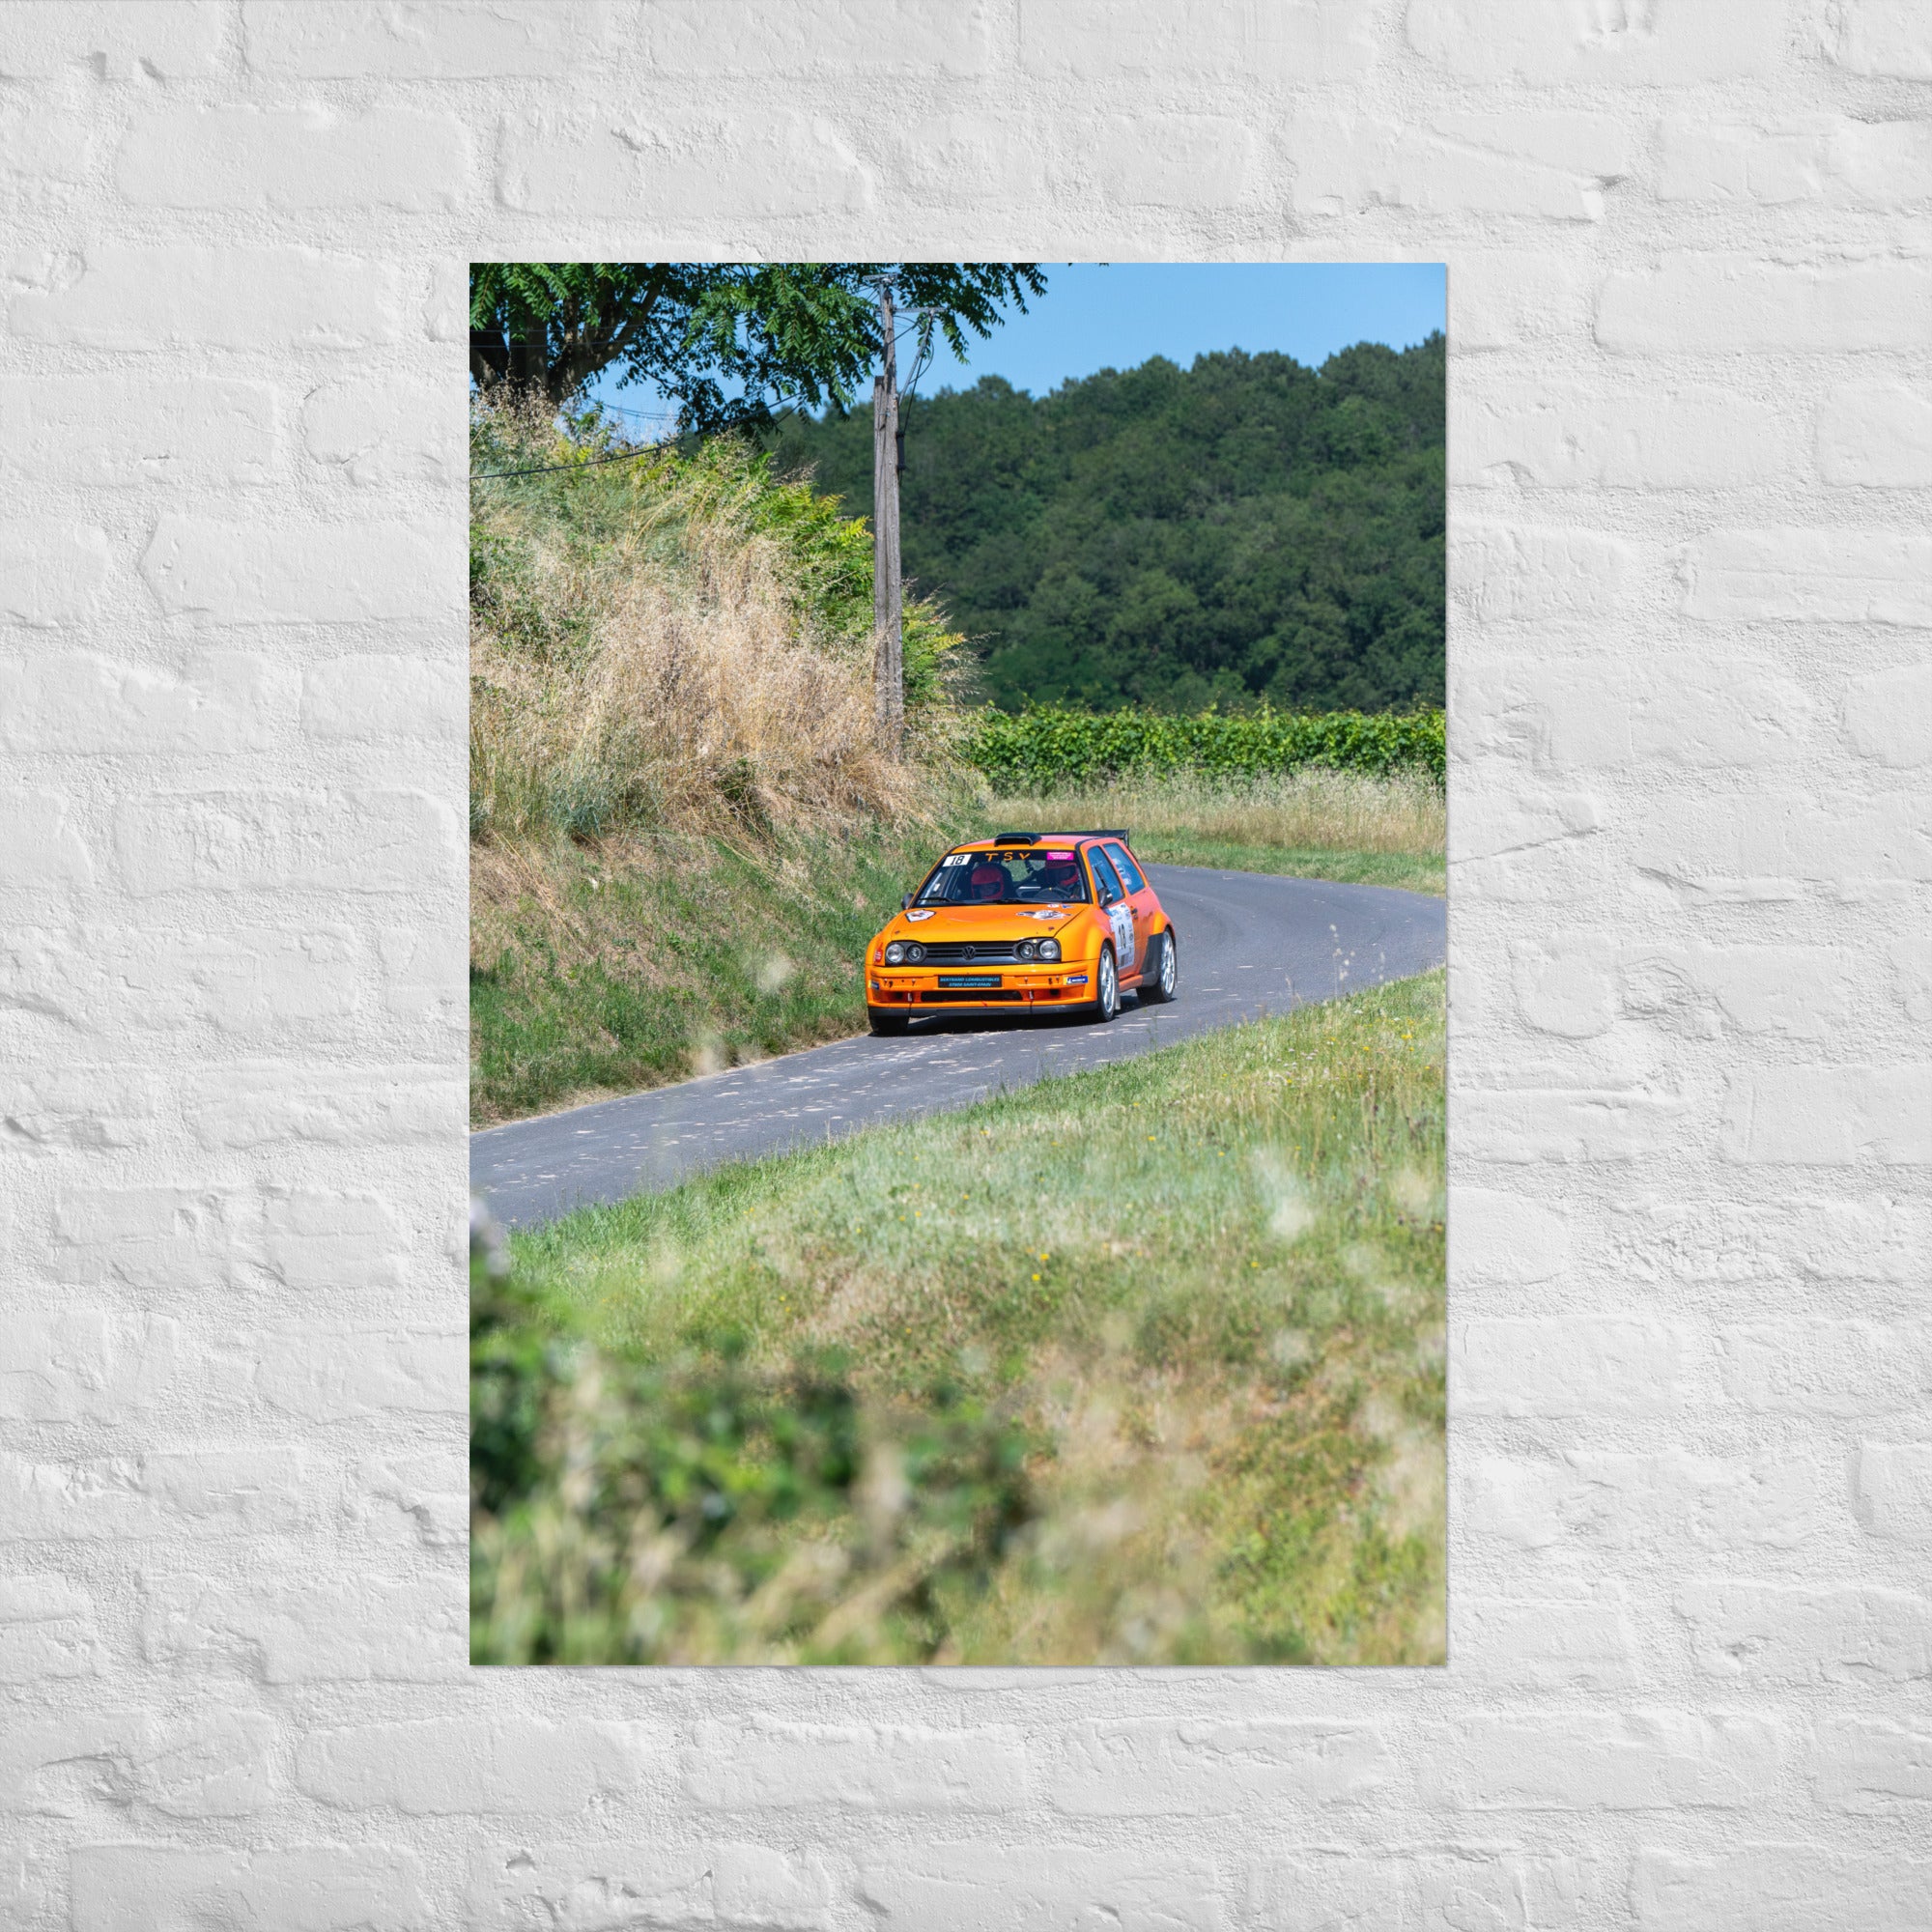 Poster 'Volkswagen Golf 3 Rallye' montrant une voiture de rallye Volkswagen Golf 3 orange en plein course